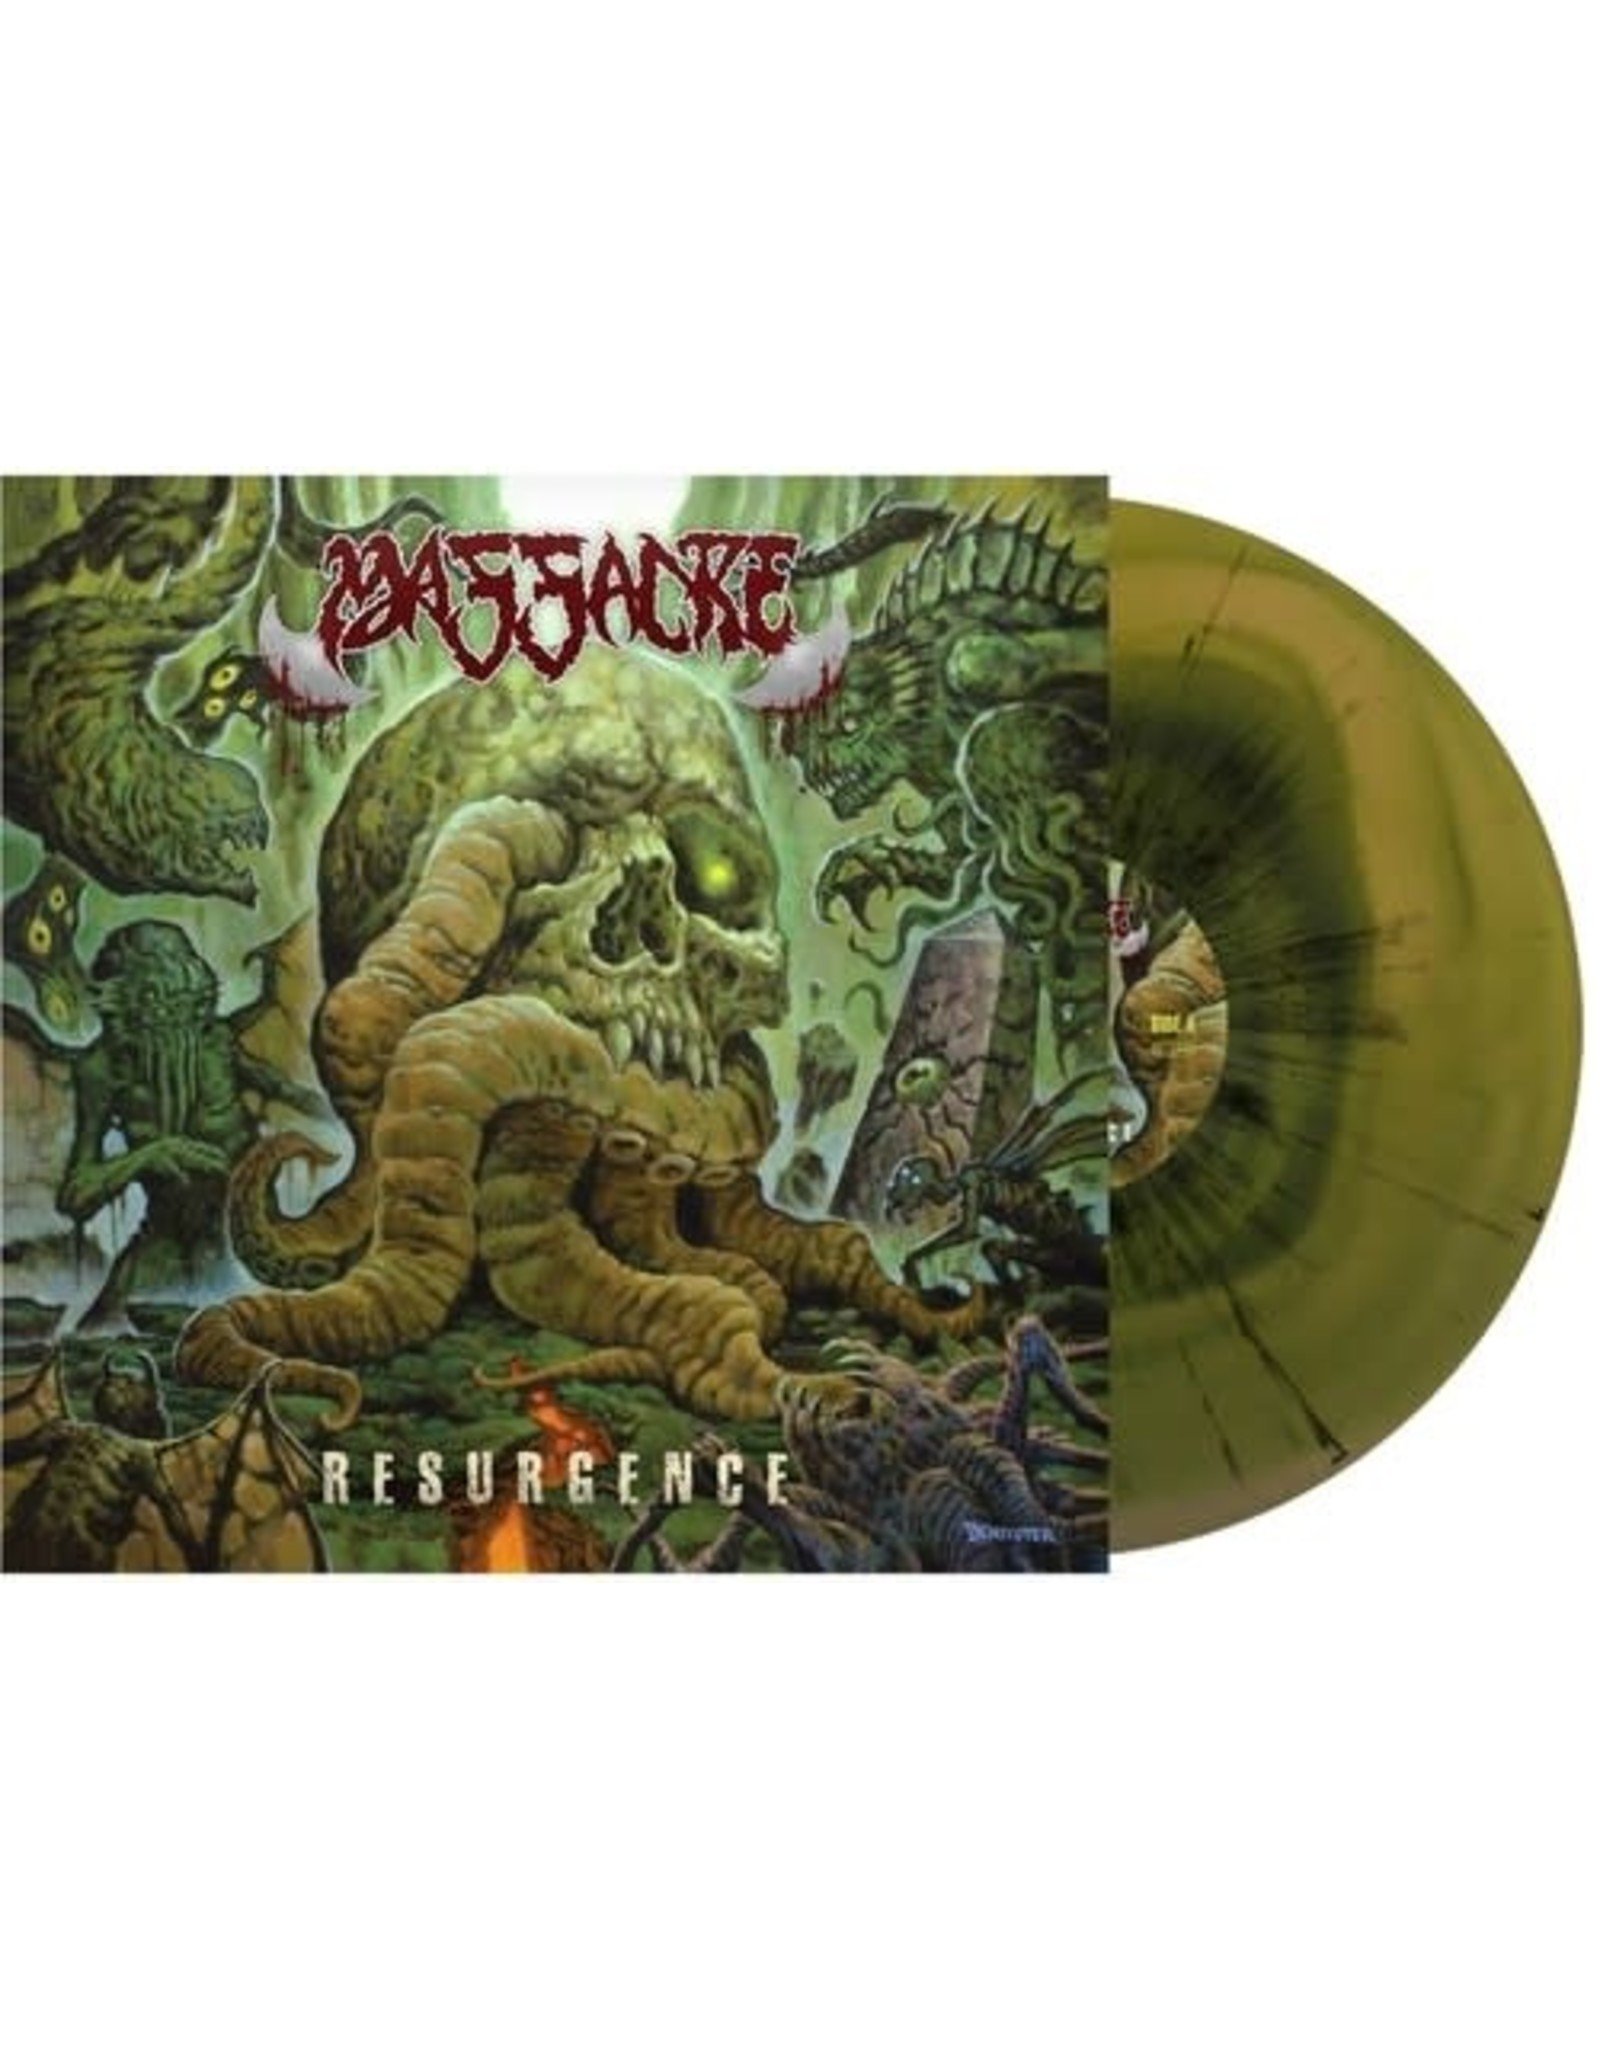 New Vinyl Massacre - Resurgence (IEX, Cyan Mustard Swirl w/ Black Splatter) LP